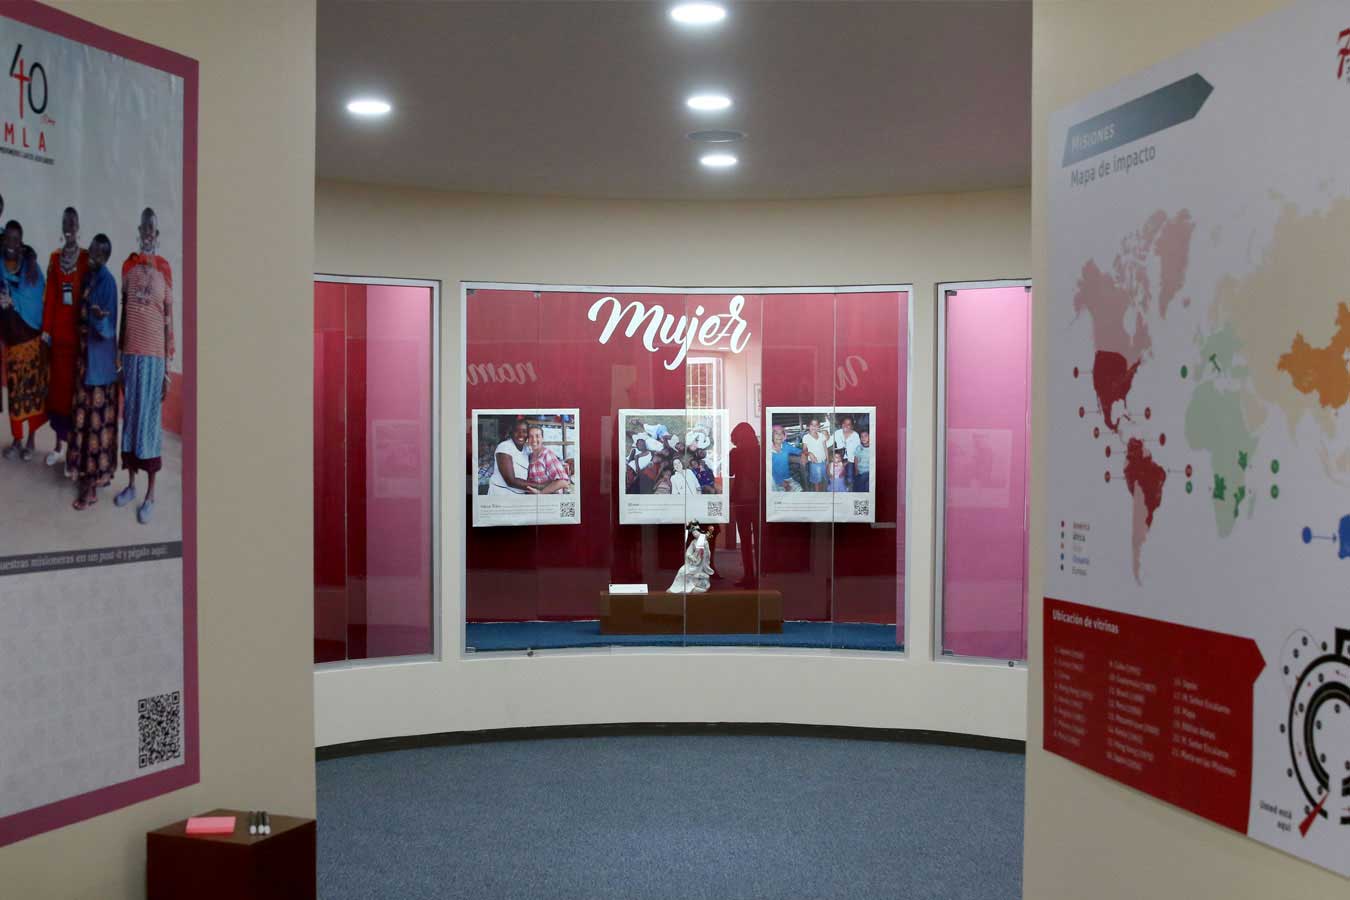 El MUSMI reabre sus puertas con la exposición “Mujeres en la Misión”